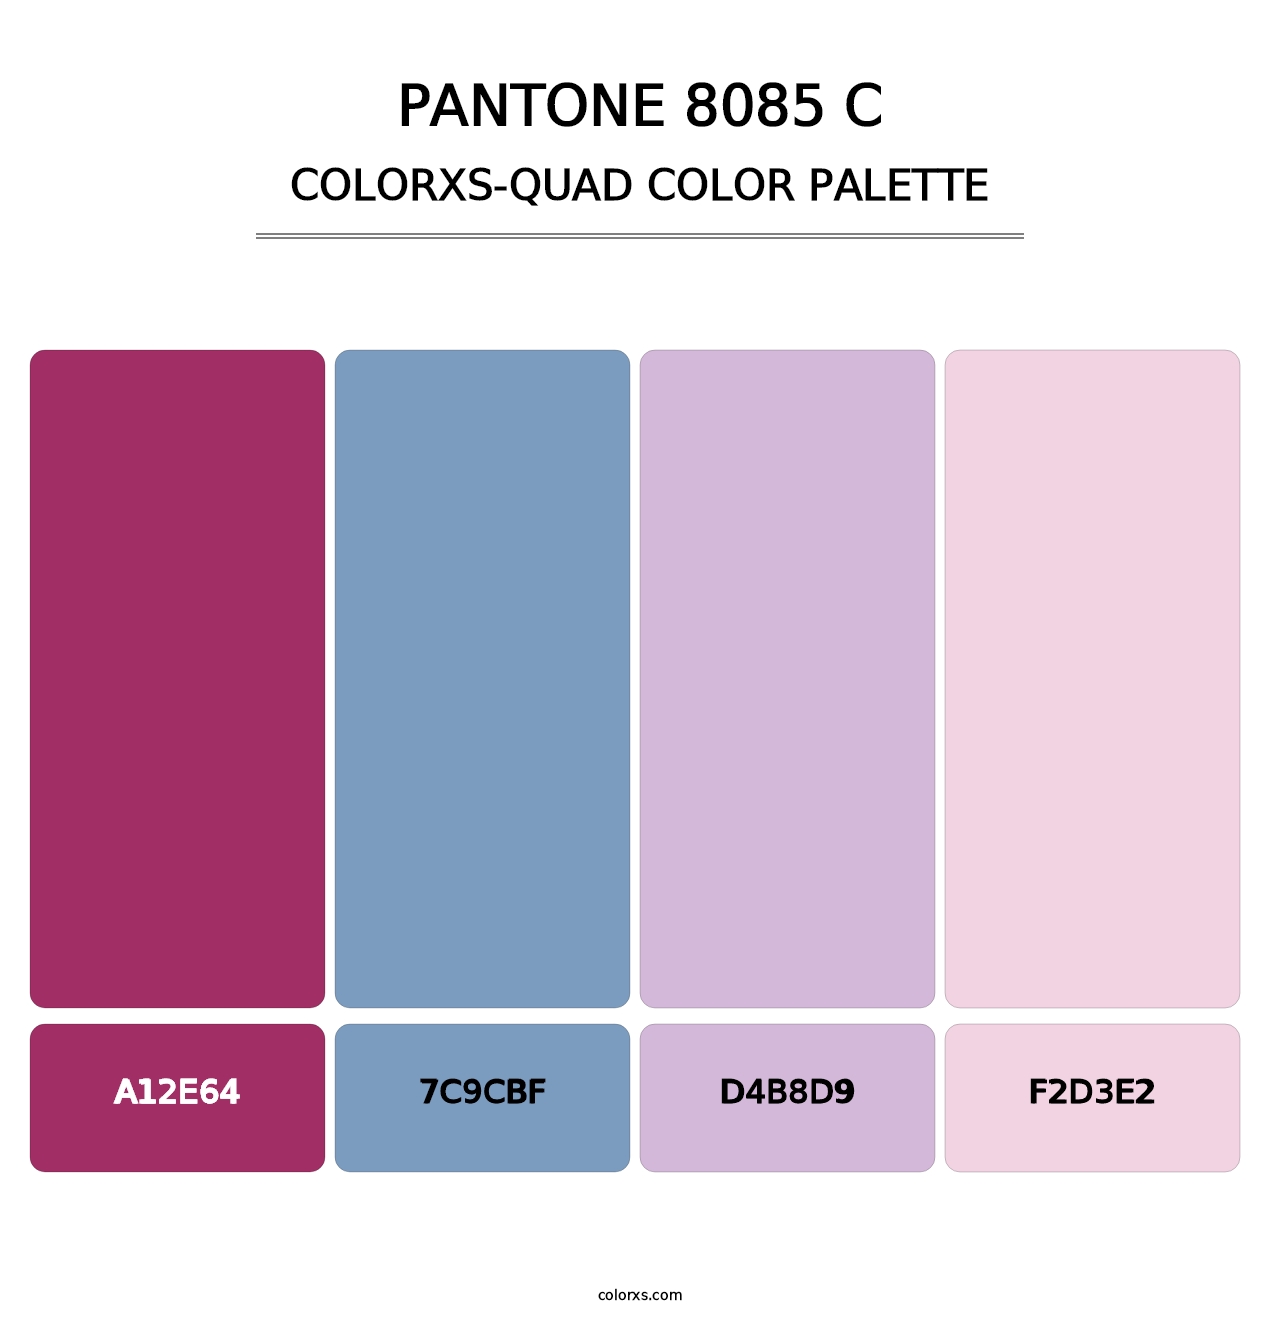 PANTONE 8085 C - Colorxs Quad Palette